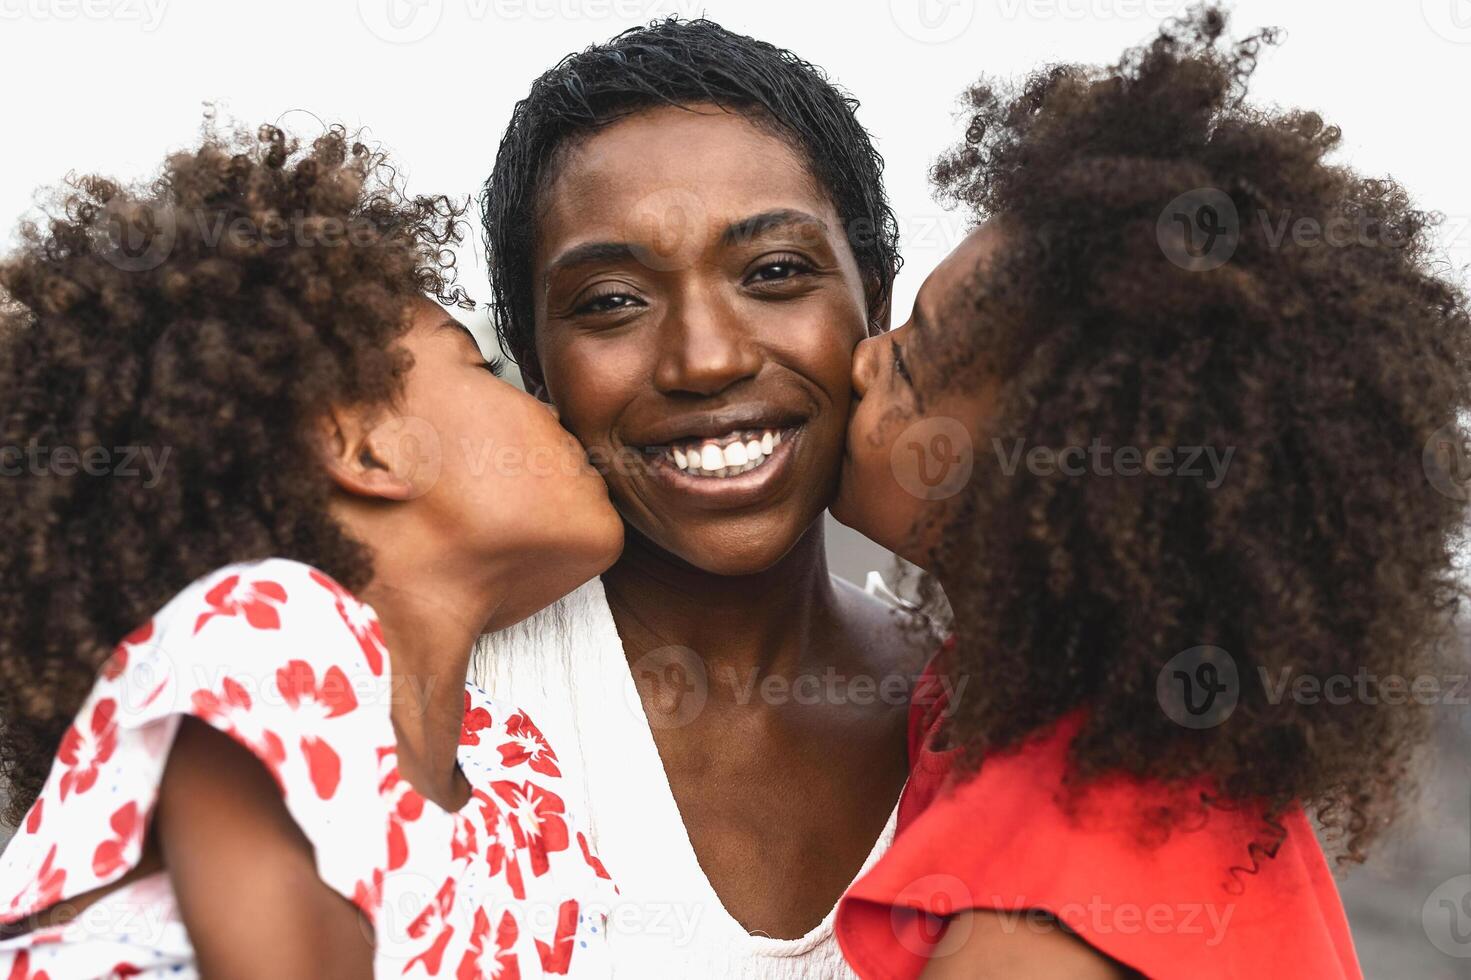 Lycklig afrikansk familj har roligt på de strand under sommar högtider - porträtt av afro människor njuter semester dagar - föräldrar kärlek och resa livsstil begrepp foto